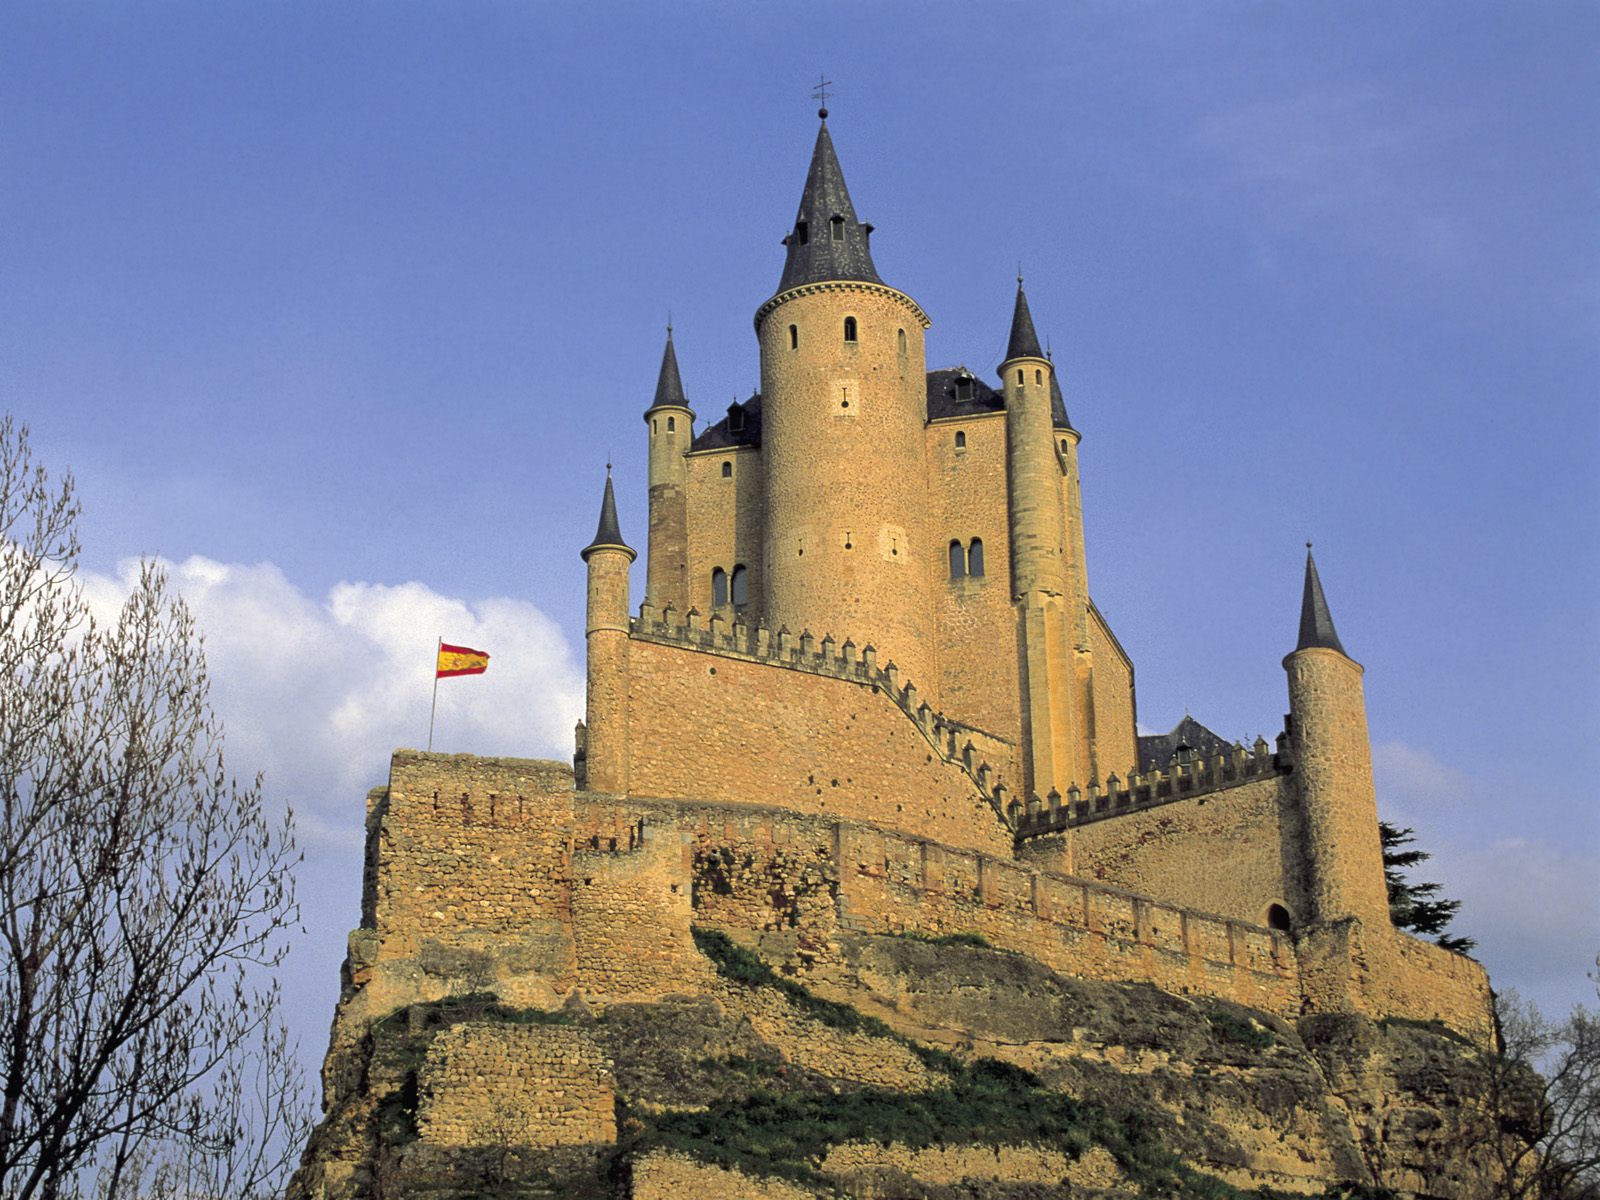 Alcazar Tower, Segovia, Spain